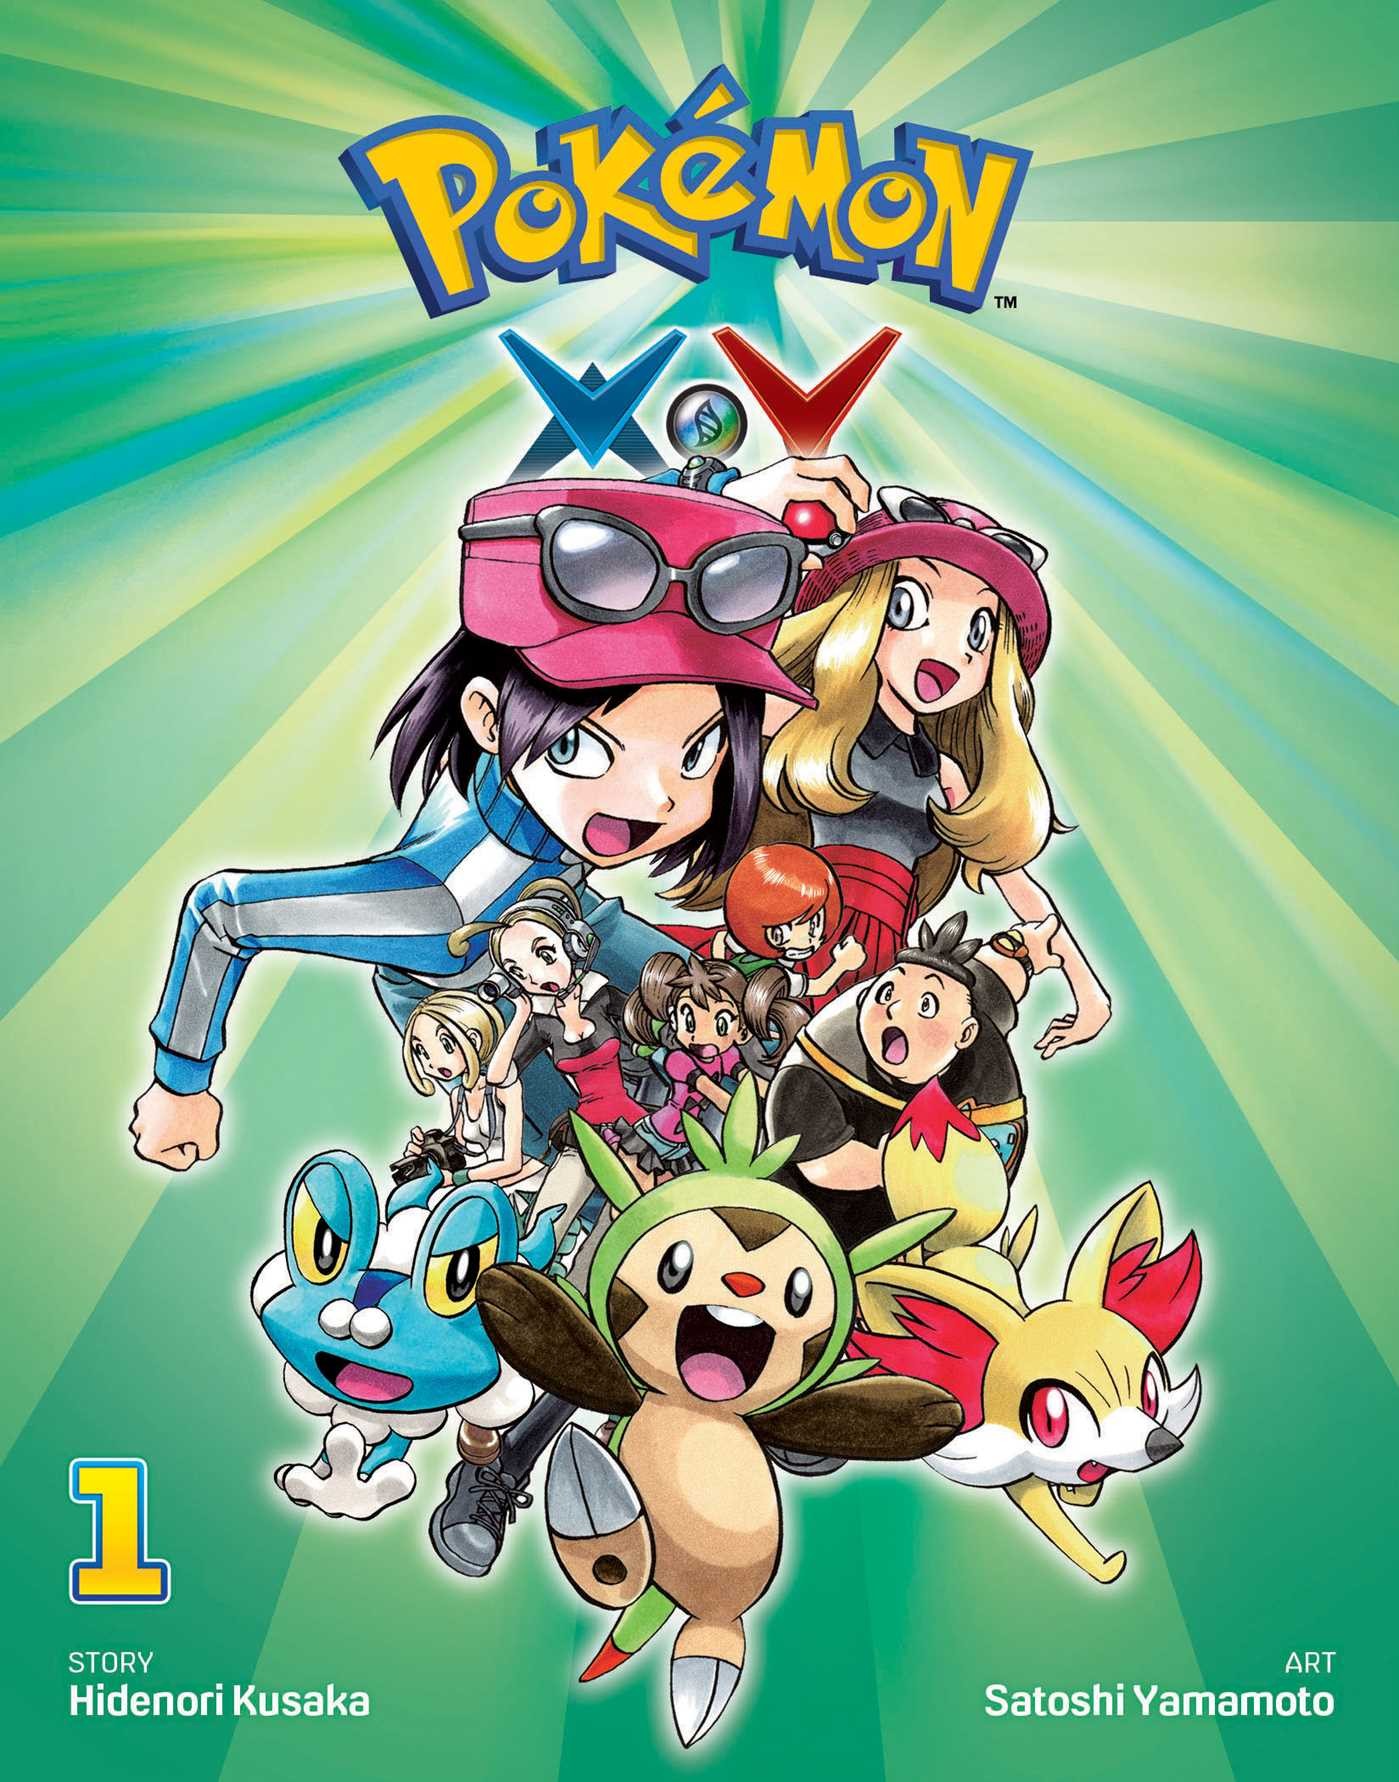 Pokémon X•Y, Vol. 1 by Hidenori Kusaka